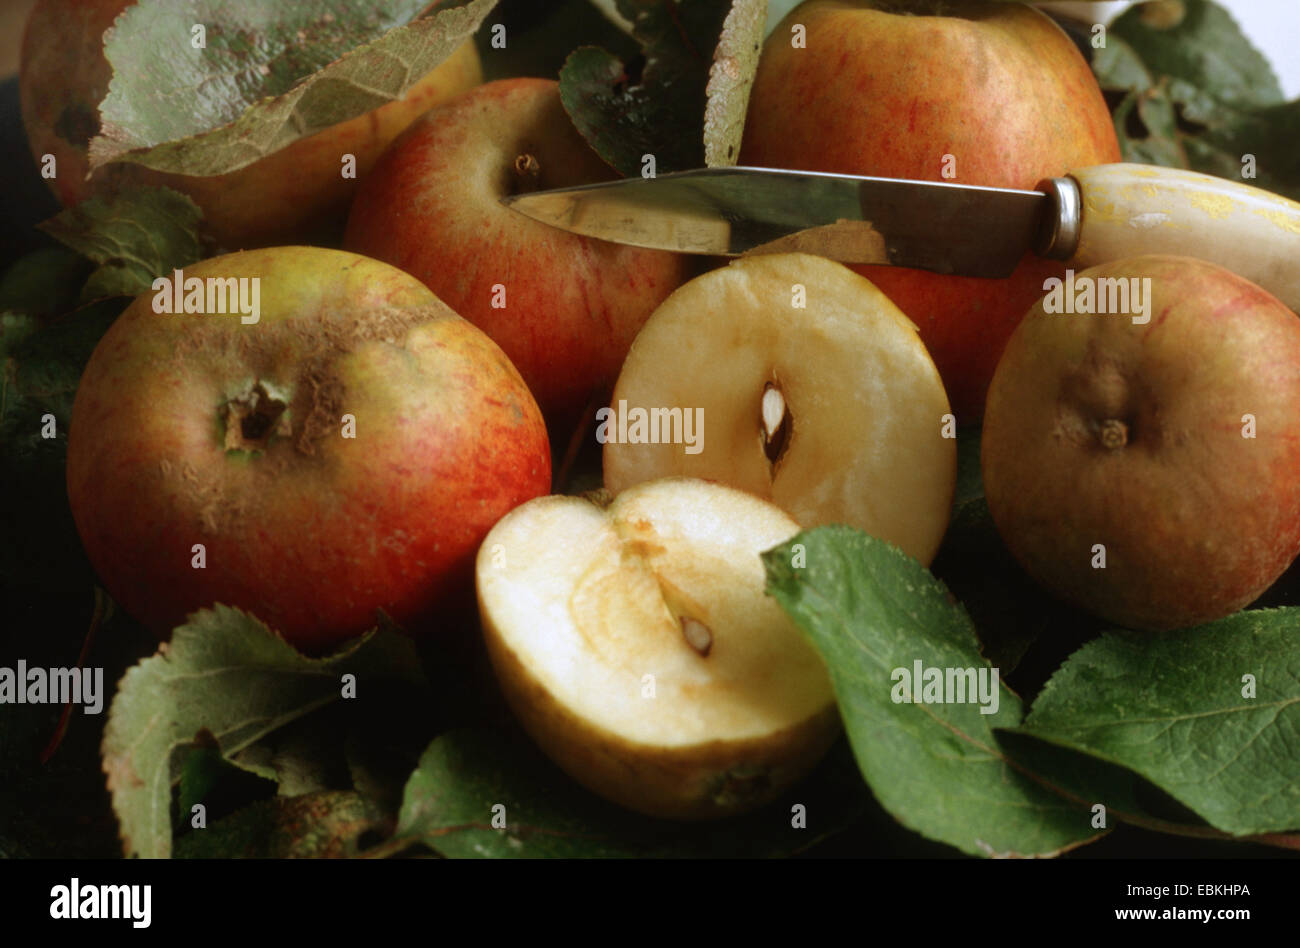 apple (Malus domestica 'Holsteiner Cox', Malus domestica Holsteiner Cox), apples of the cultivar Holsteiner cox Stock Photo